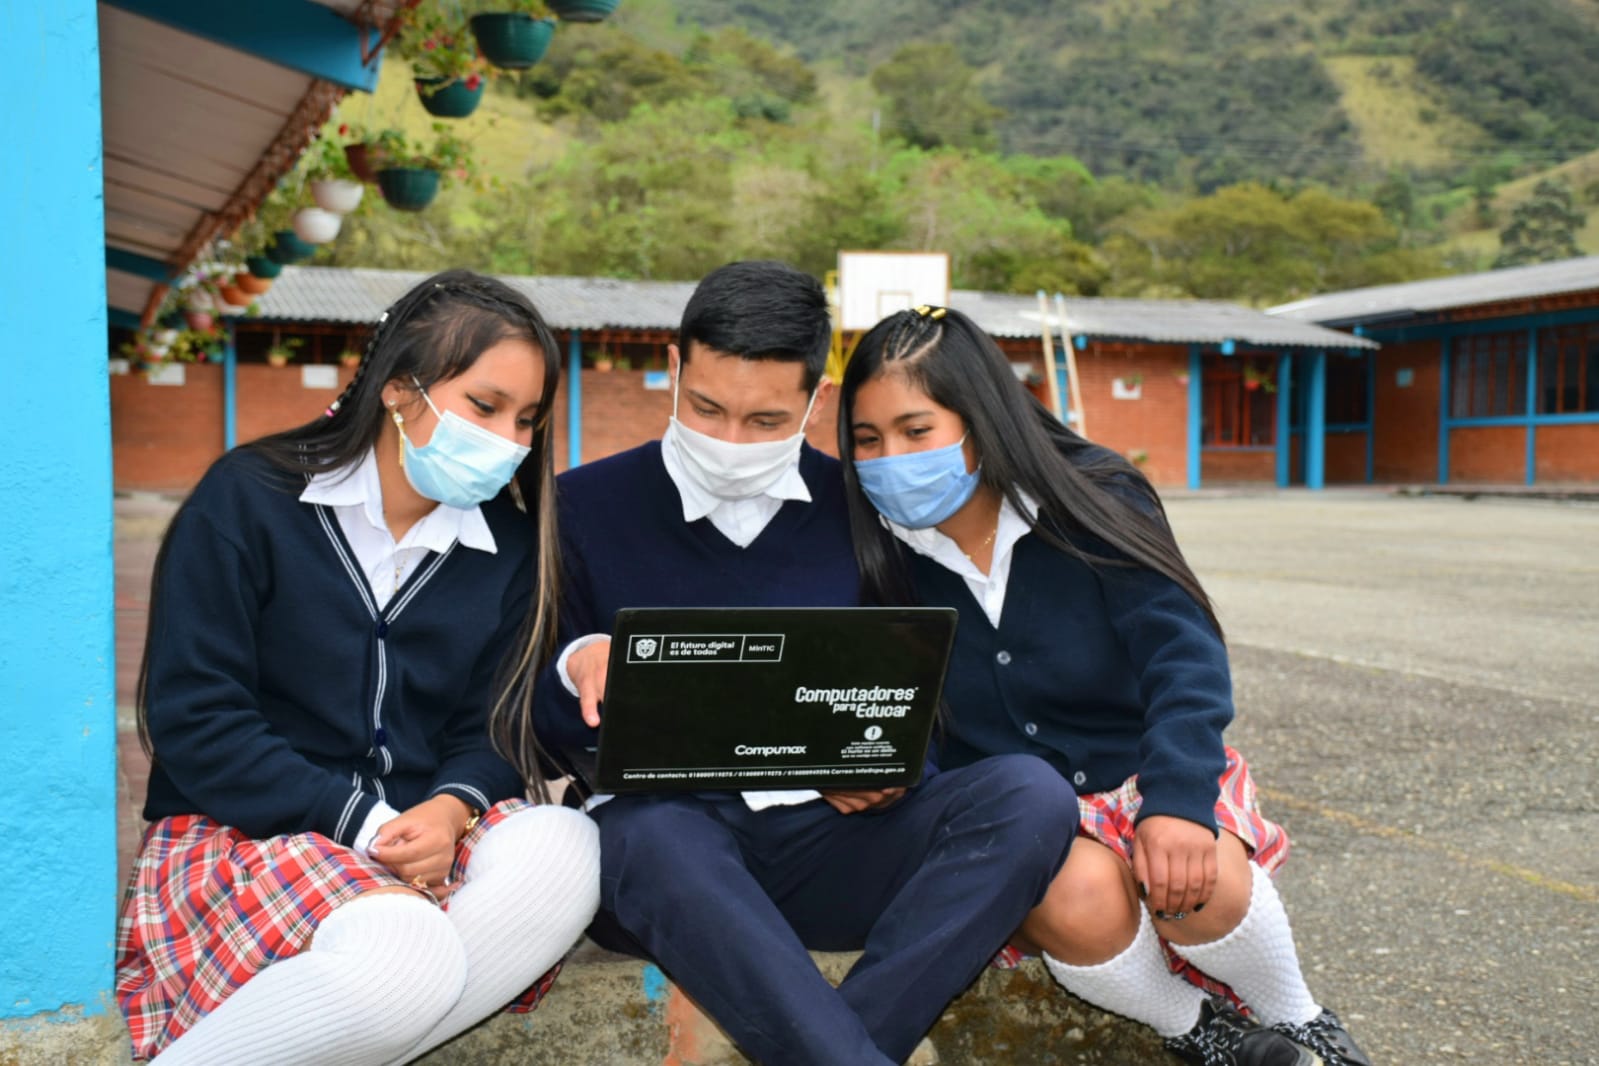 Image: Estudiantes compartiendo un dispositivo digital.